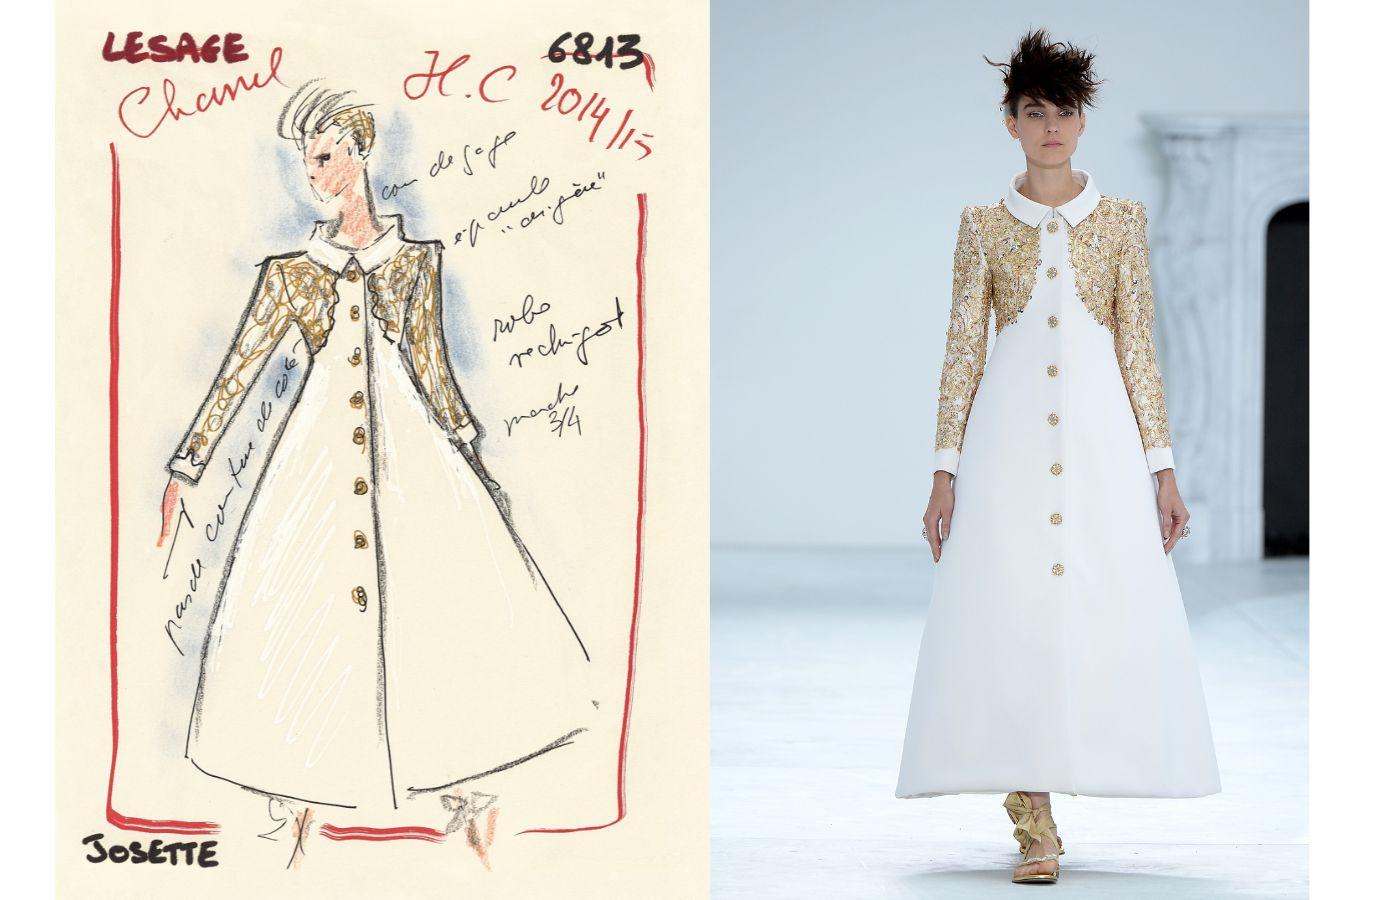 Szkic płaszcza z kolekcji Chanel haute couture jesień–zima 2014/15 oraz zdjęcie z pokazu, na którym modelka prezentuje gotowy projekt (Fot. Dominique Charriau WireImage/Getty Images dzięki uprzejmości Metropolitan Museum of Art)